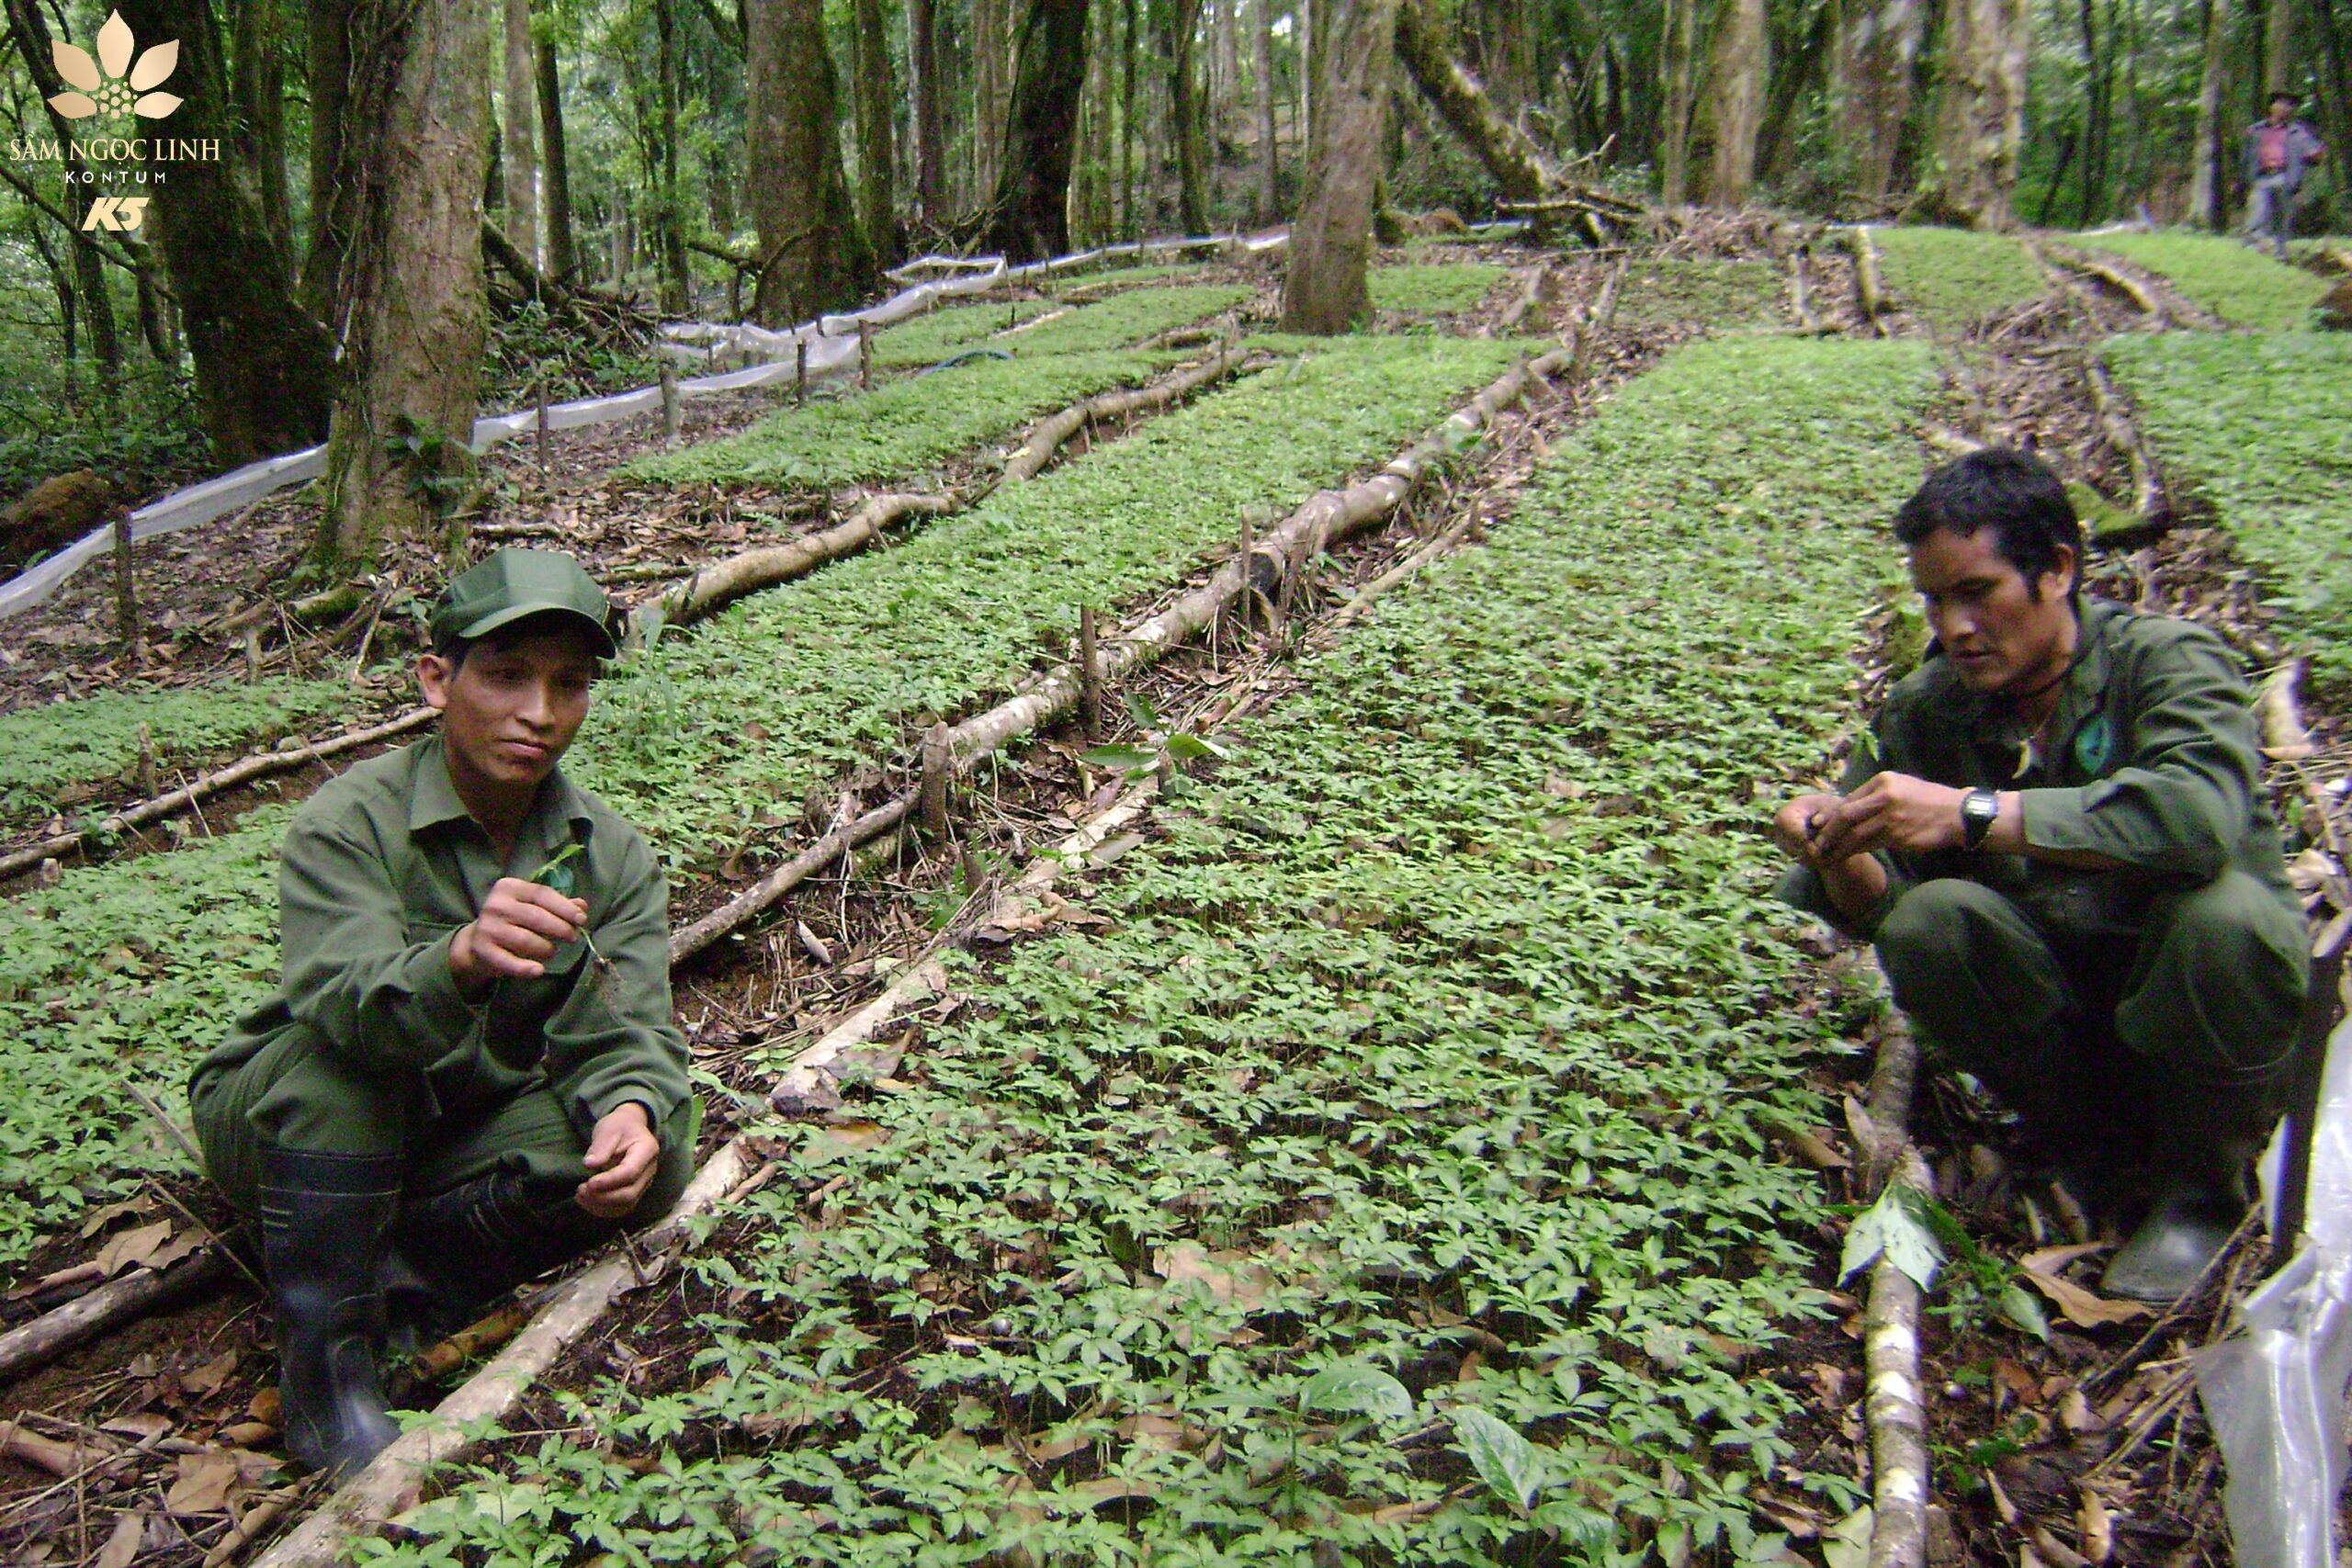 Hình ảnh vườn Sâm Ngọc Linh rộng 140 ha năm 2011.